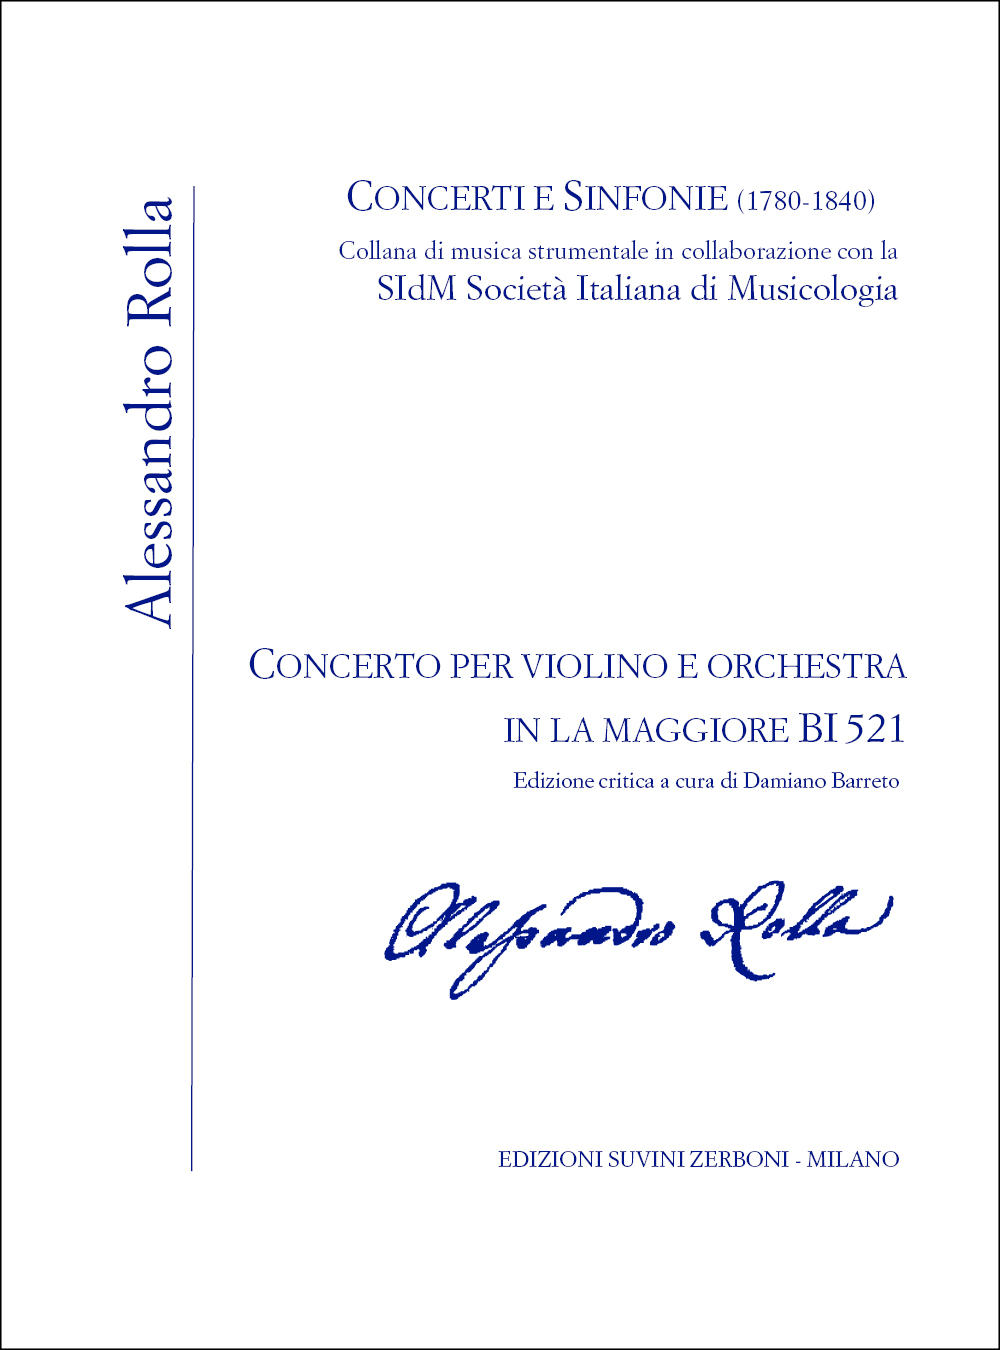 Alessandro Rolla: Concerto violino e orchestra in La maggiore  BI521